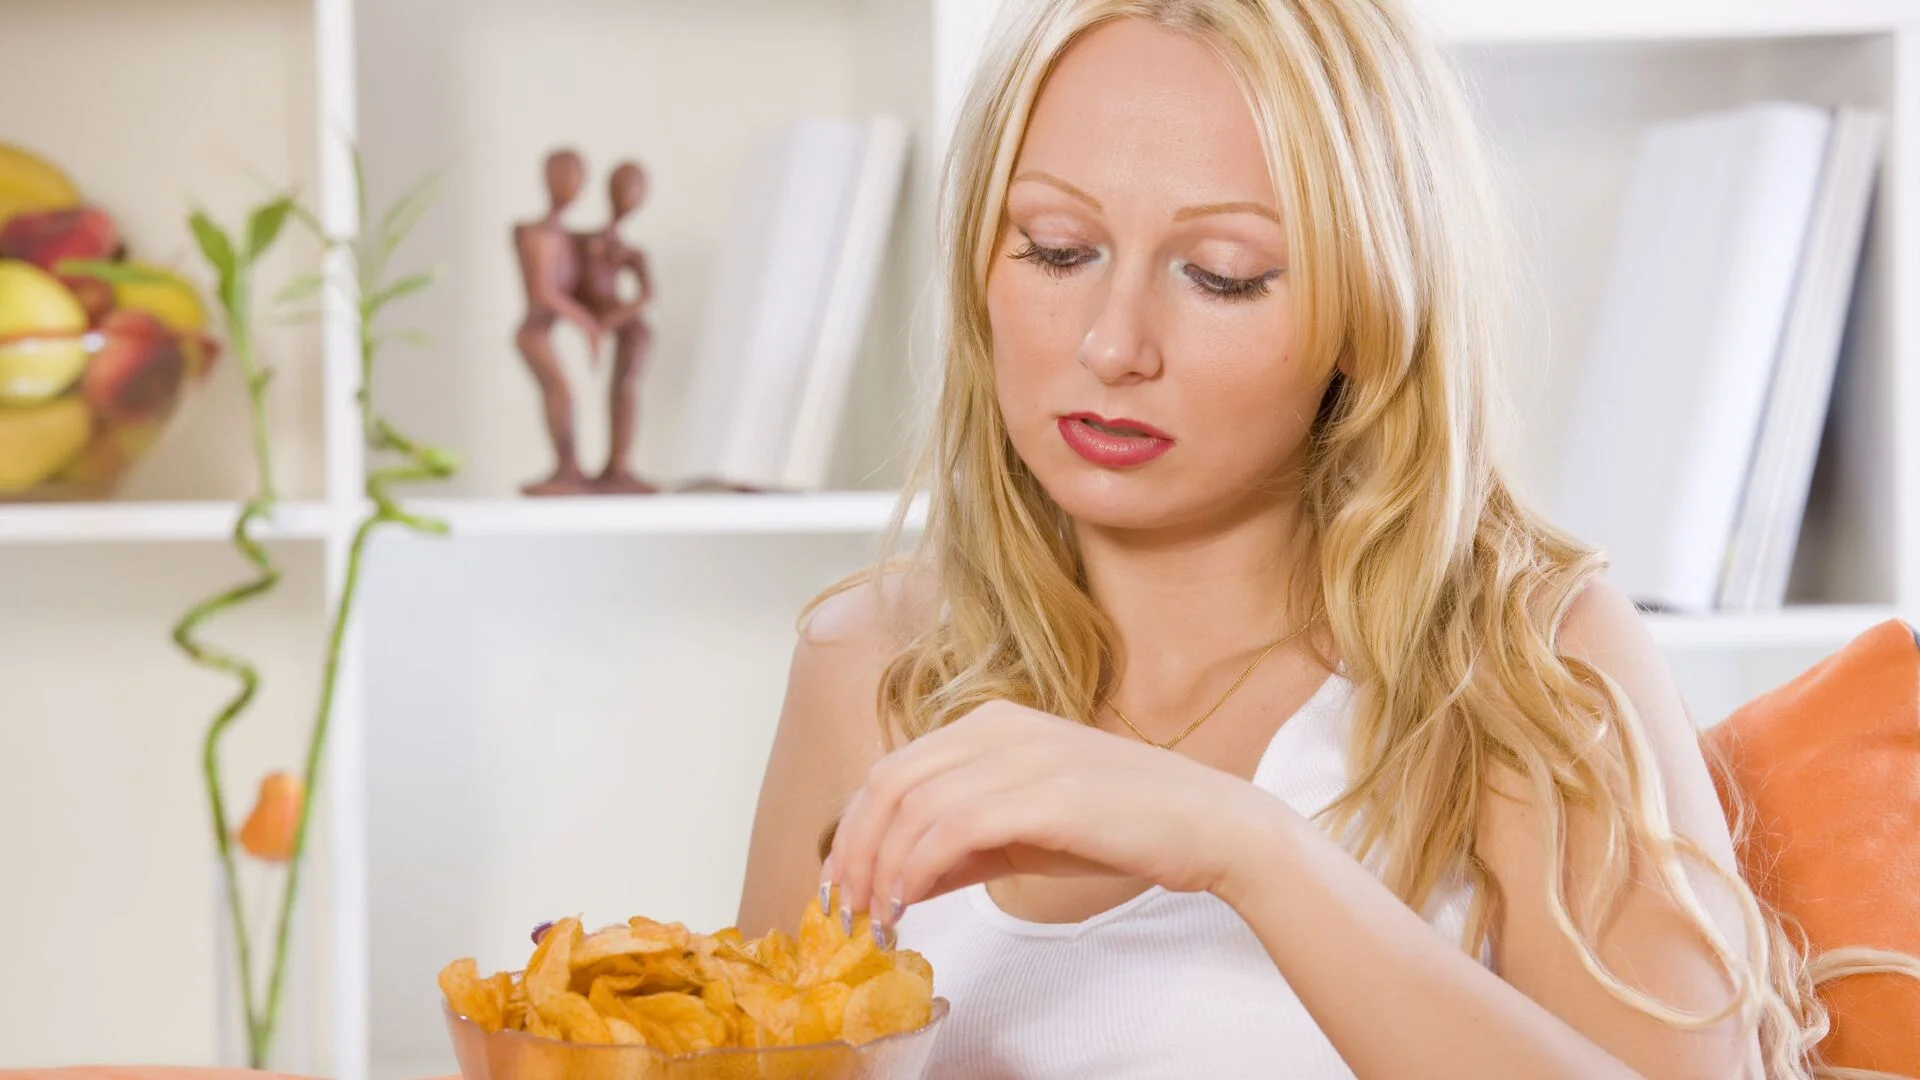 4 храни, които ядат само хора с ниско самочувствие